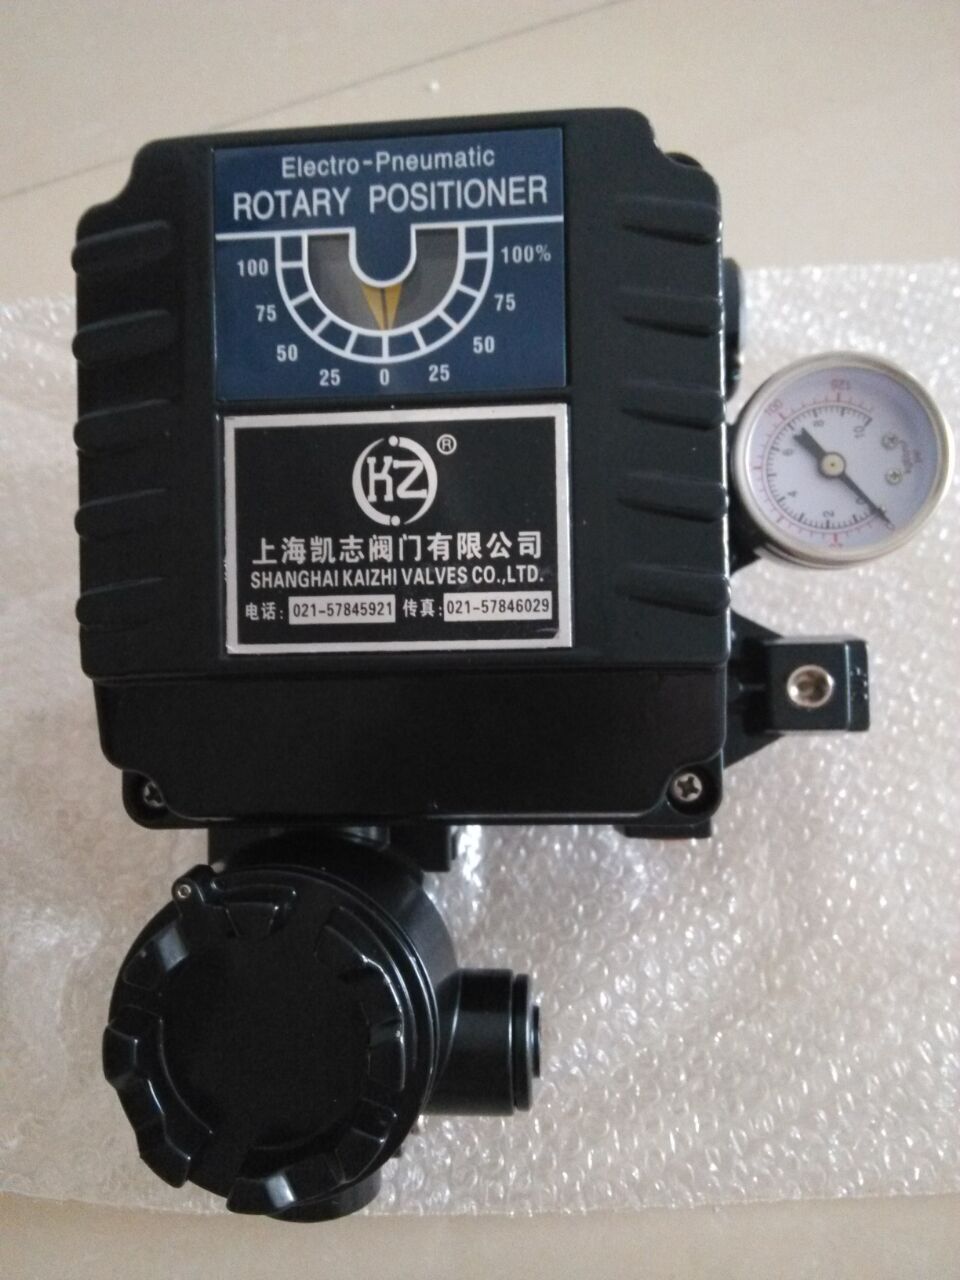 凯志正品YT-1000RSm131S01电气阀门定位器